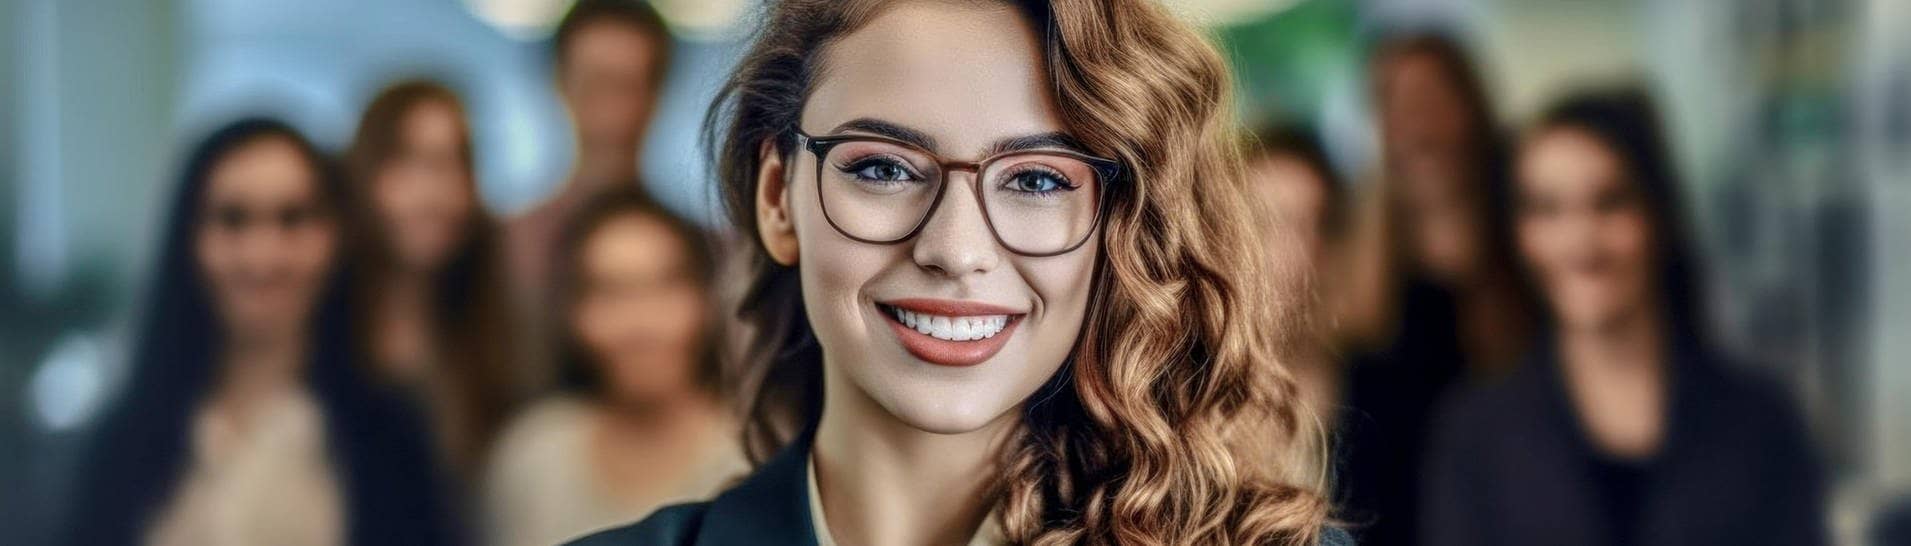 Junge Frau im Business-Outfit mit Bluse und Brille steht in einem Büro-Komplex, hinter ihr weitere Mitarbeiter. Sie lächelt zufrieden und kennt bestimmt ihr Recht auf Teilzeit in der Arbeit. (Foto: Adobe Stock, Korea Saii)